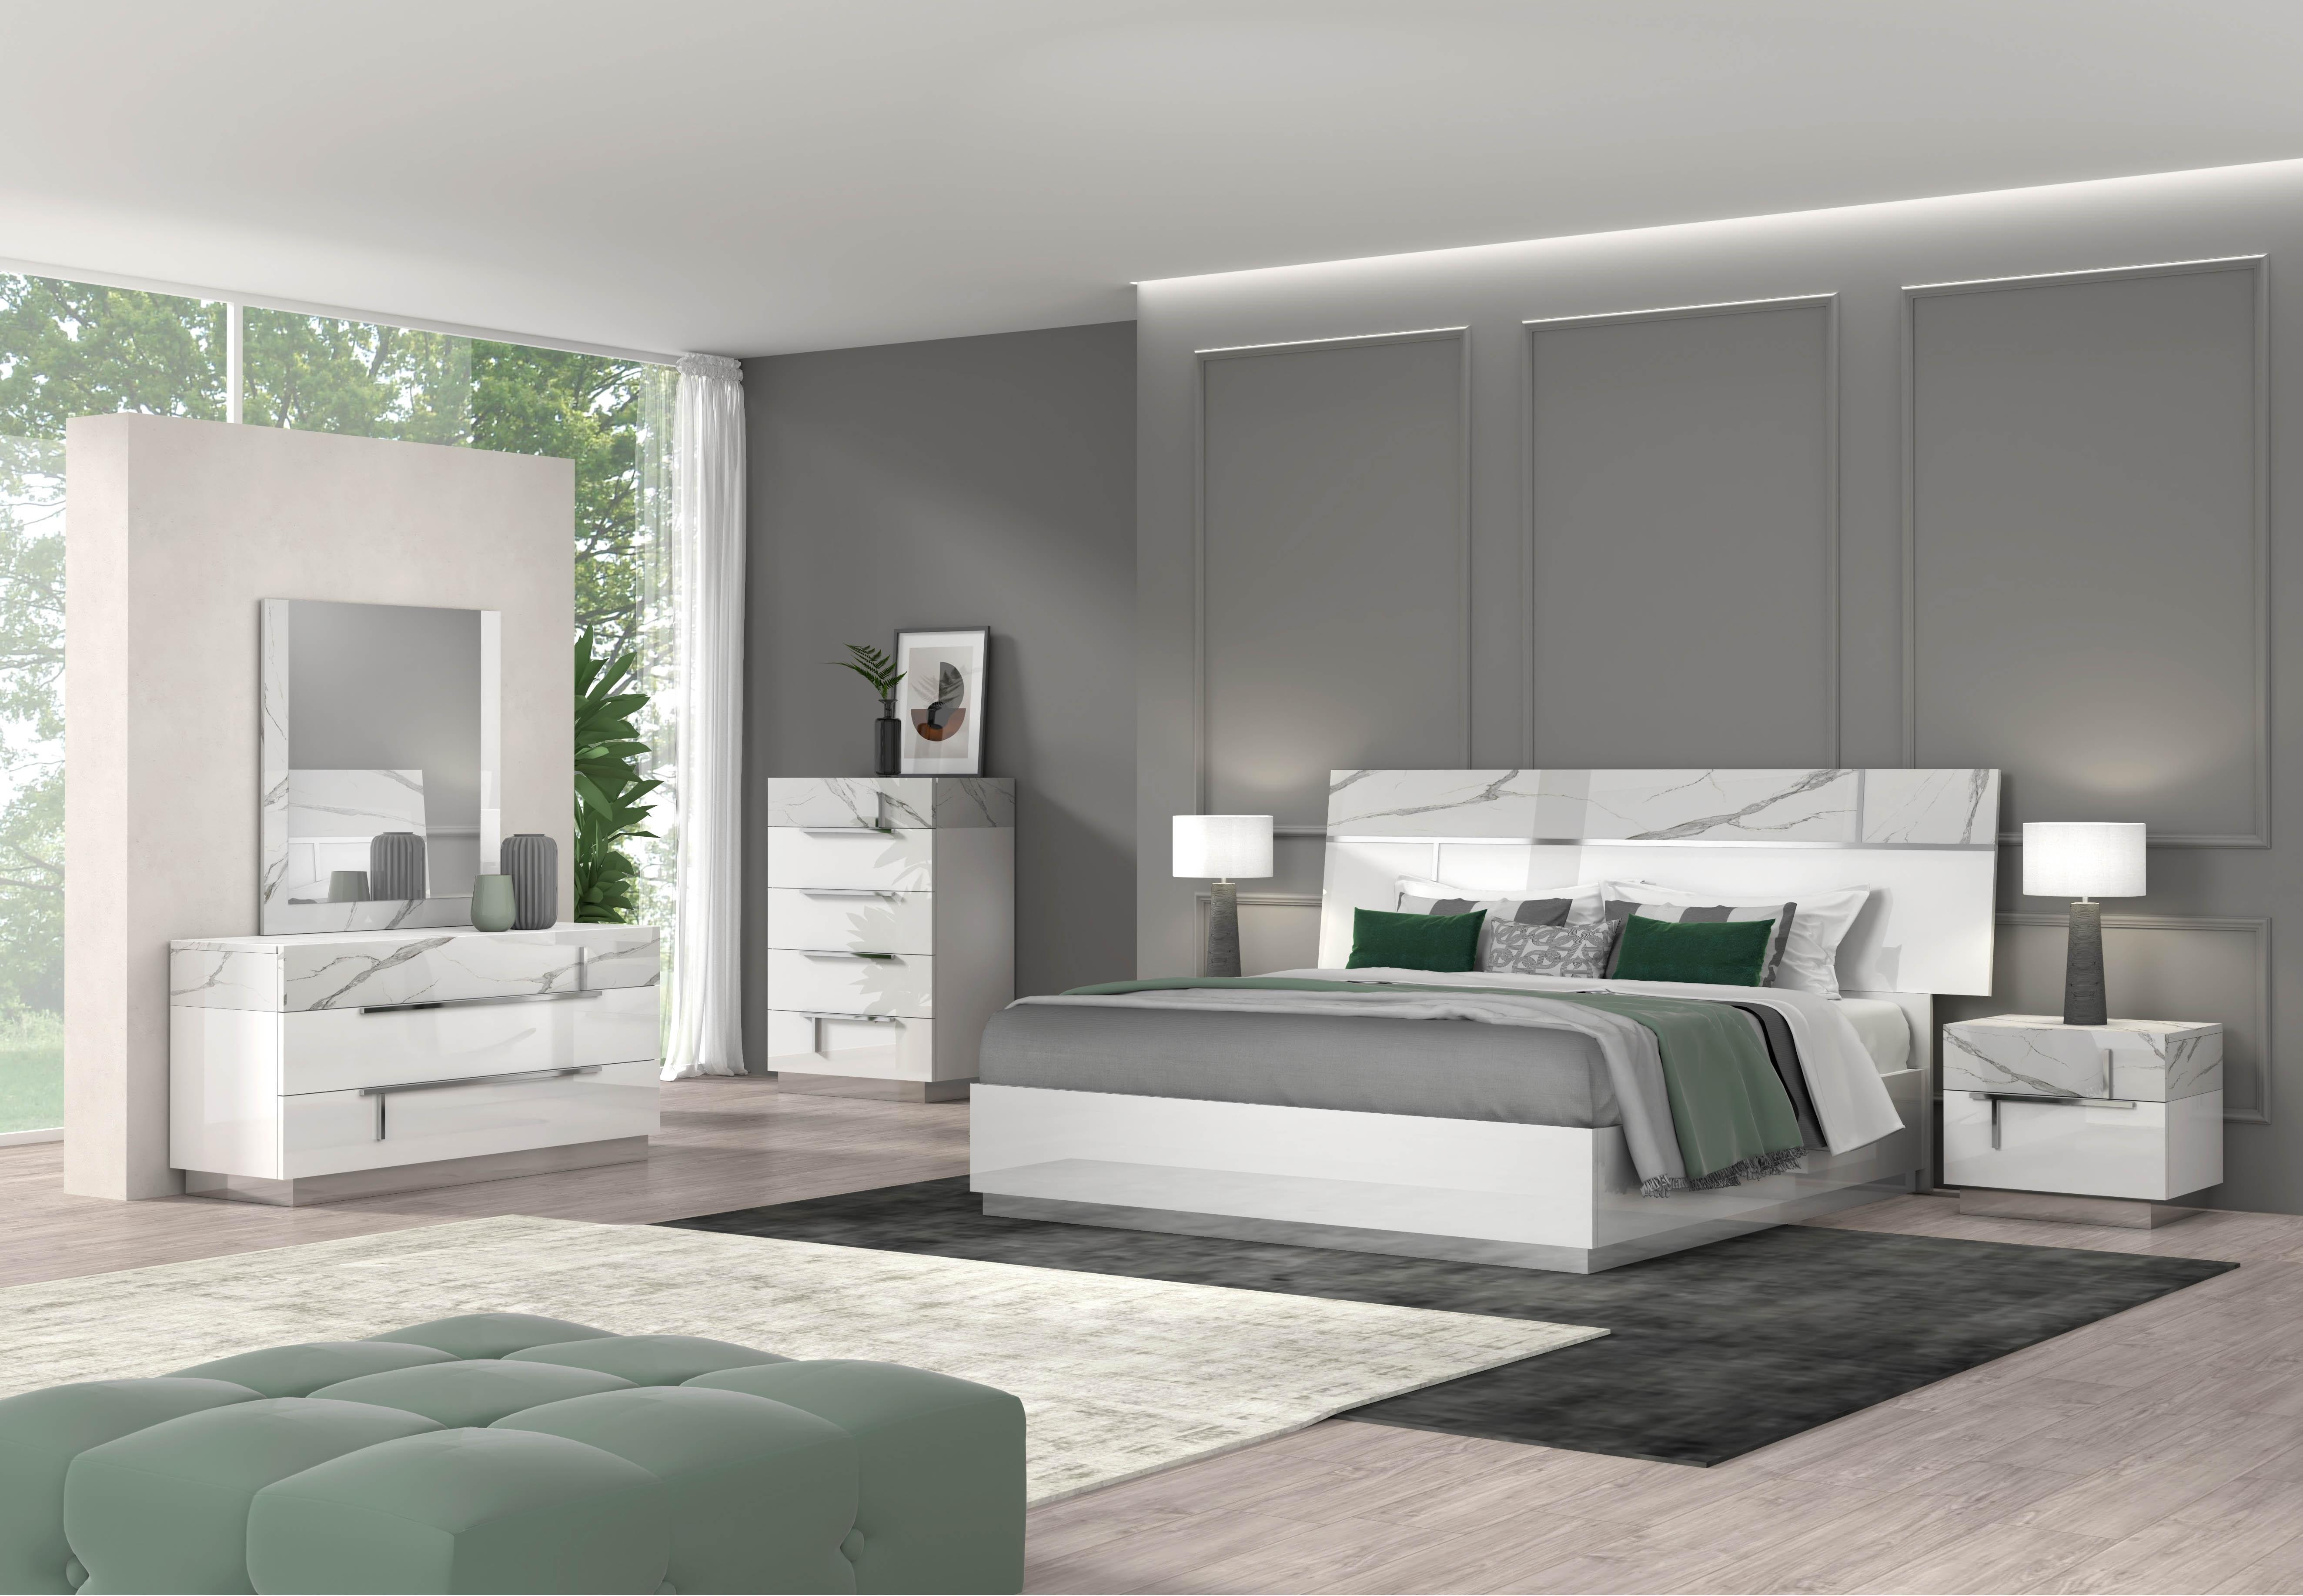 

    
Carrara Marble Finish King Size Premium Bedroom Set 5Pcs Modern J&M Sunset
